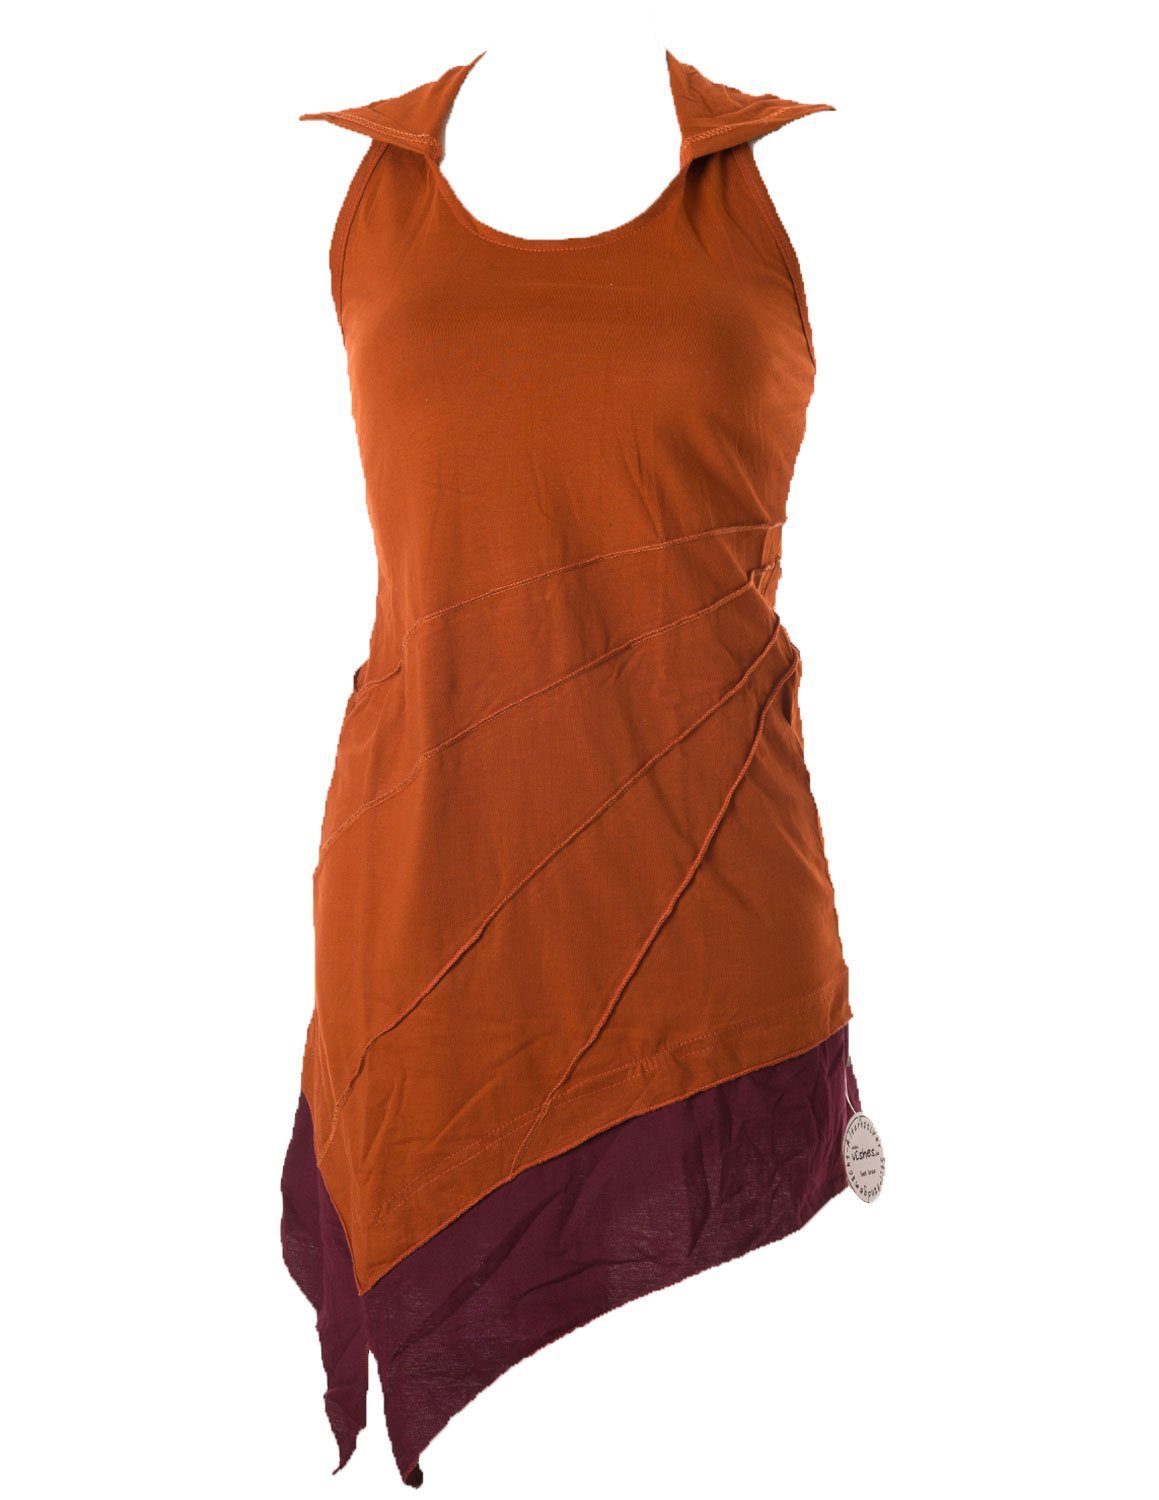 Vishes Neckholderkleid Mini Kleid Neckholder zweifarbig Zipfelkleid Hippie, Goa, Boho Elfen Style orange